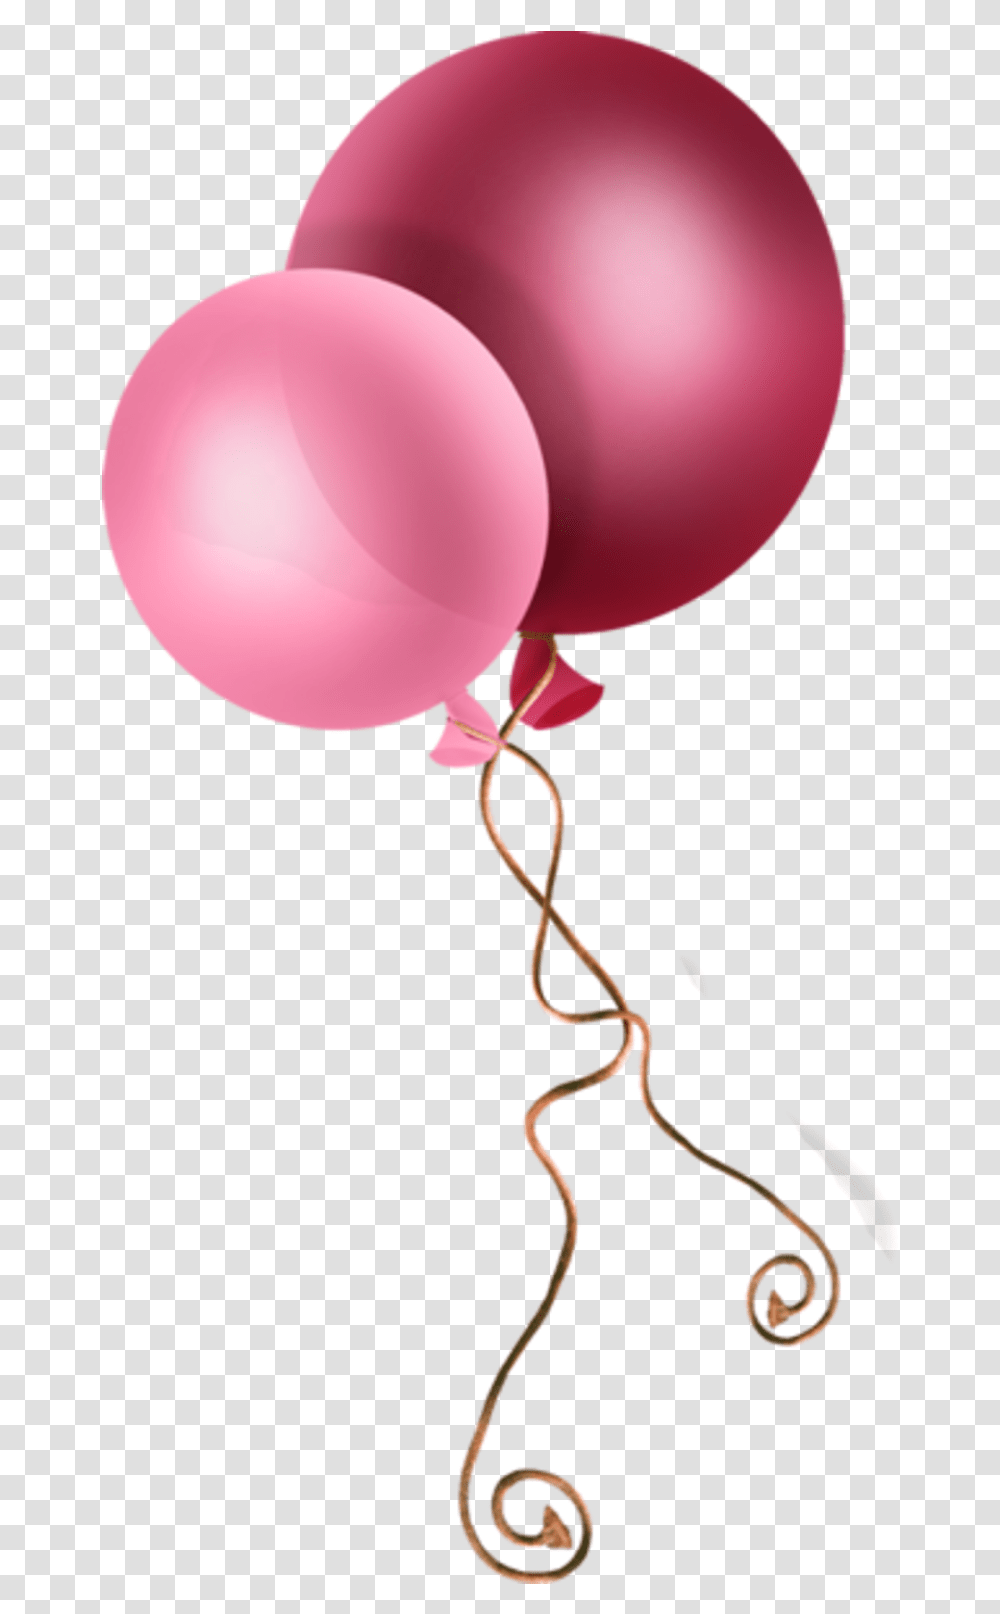 Tube Ballon Ballon De Baudruche, Balloon Transparent Png